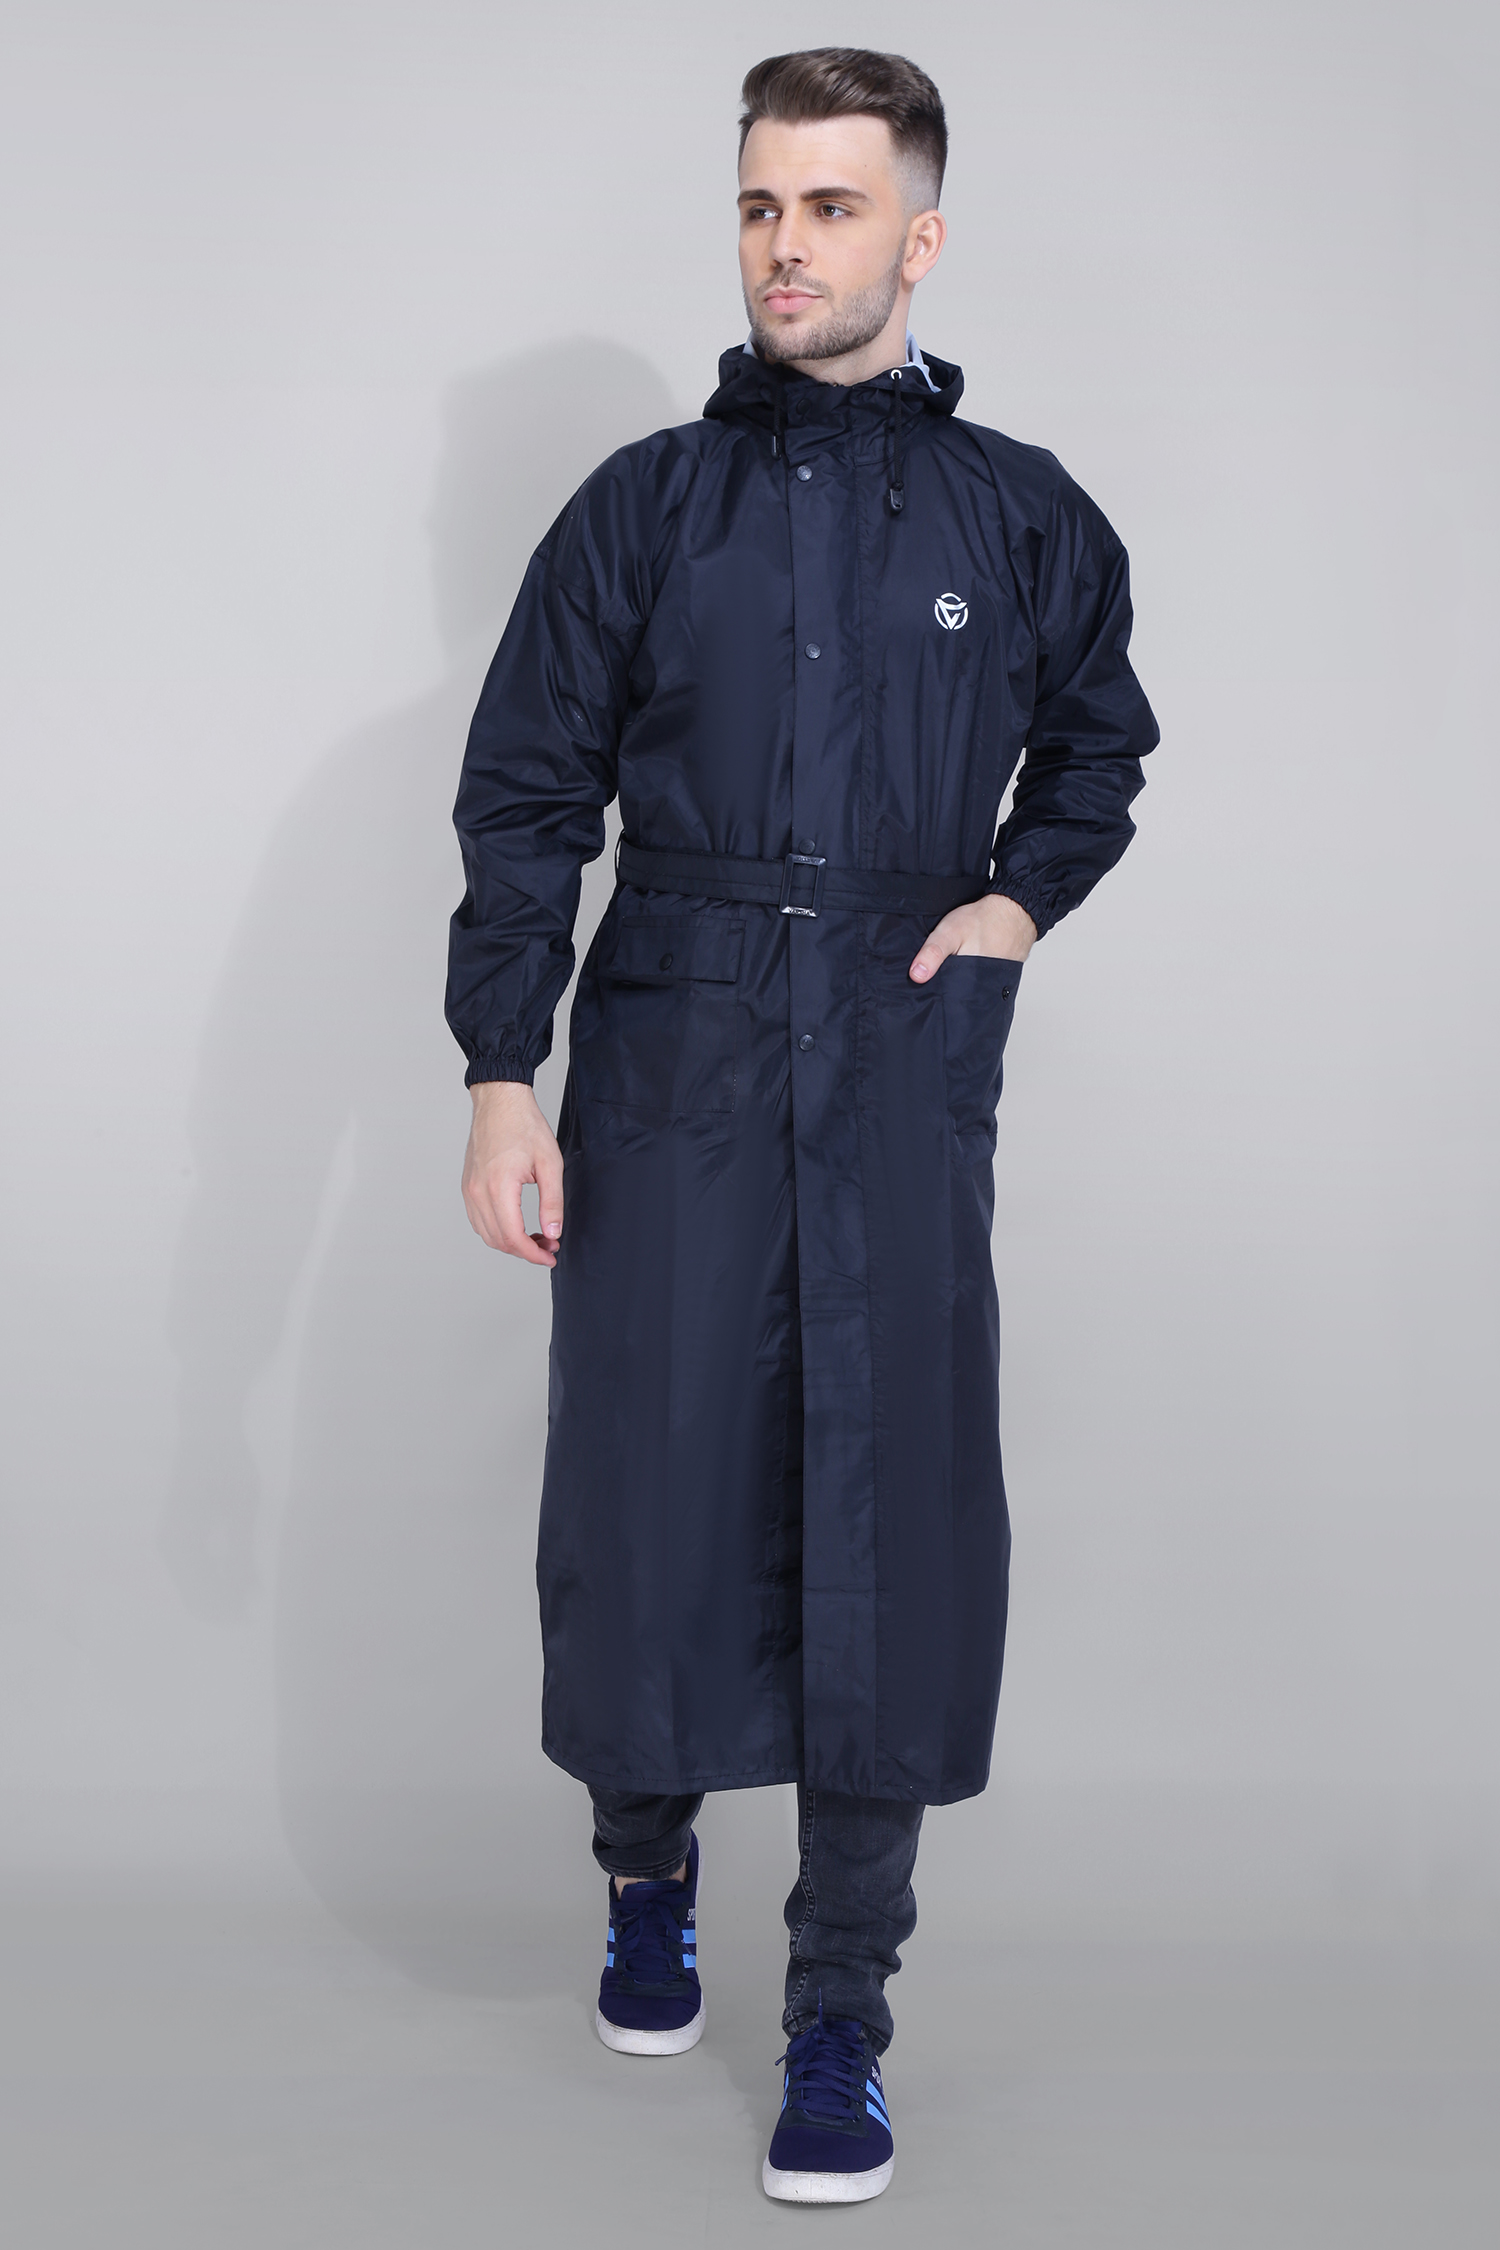 Trench Coat Style Long Raincoat - LG-1804 - Black, Large